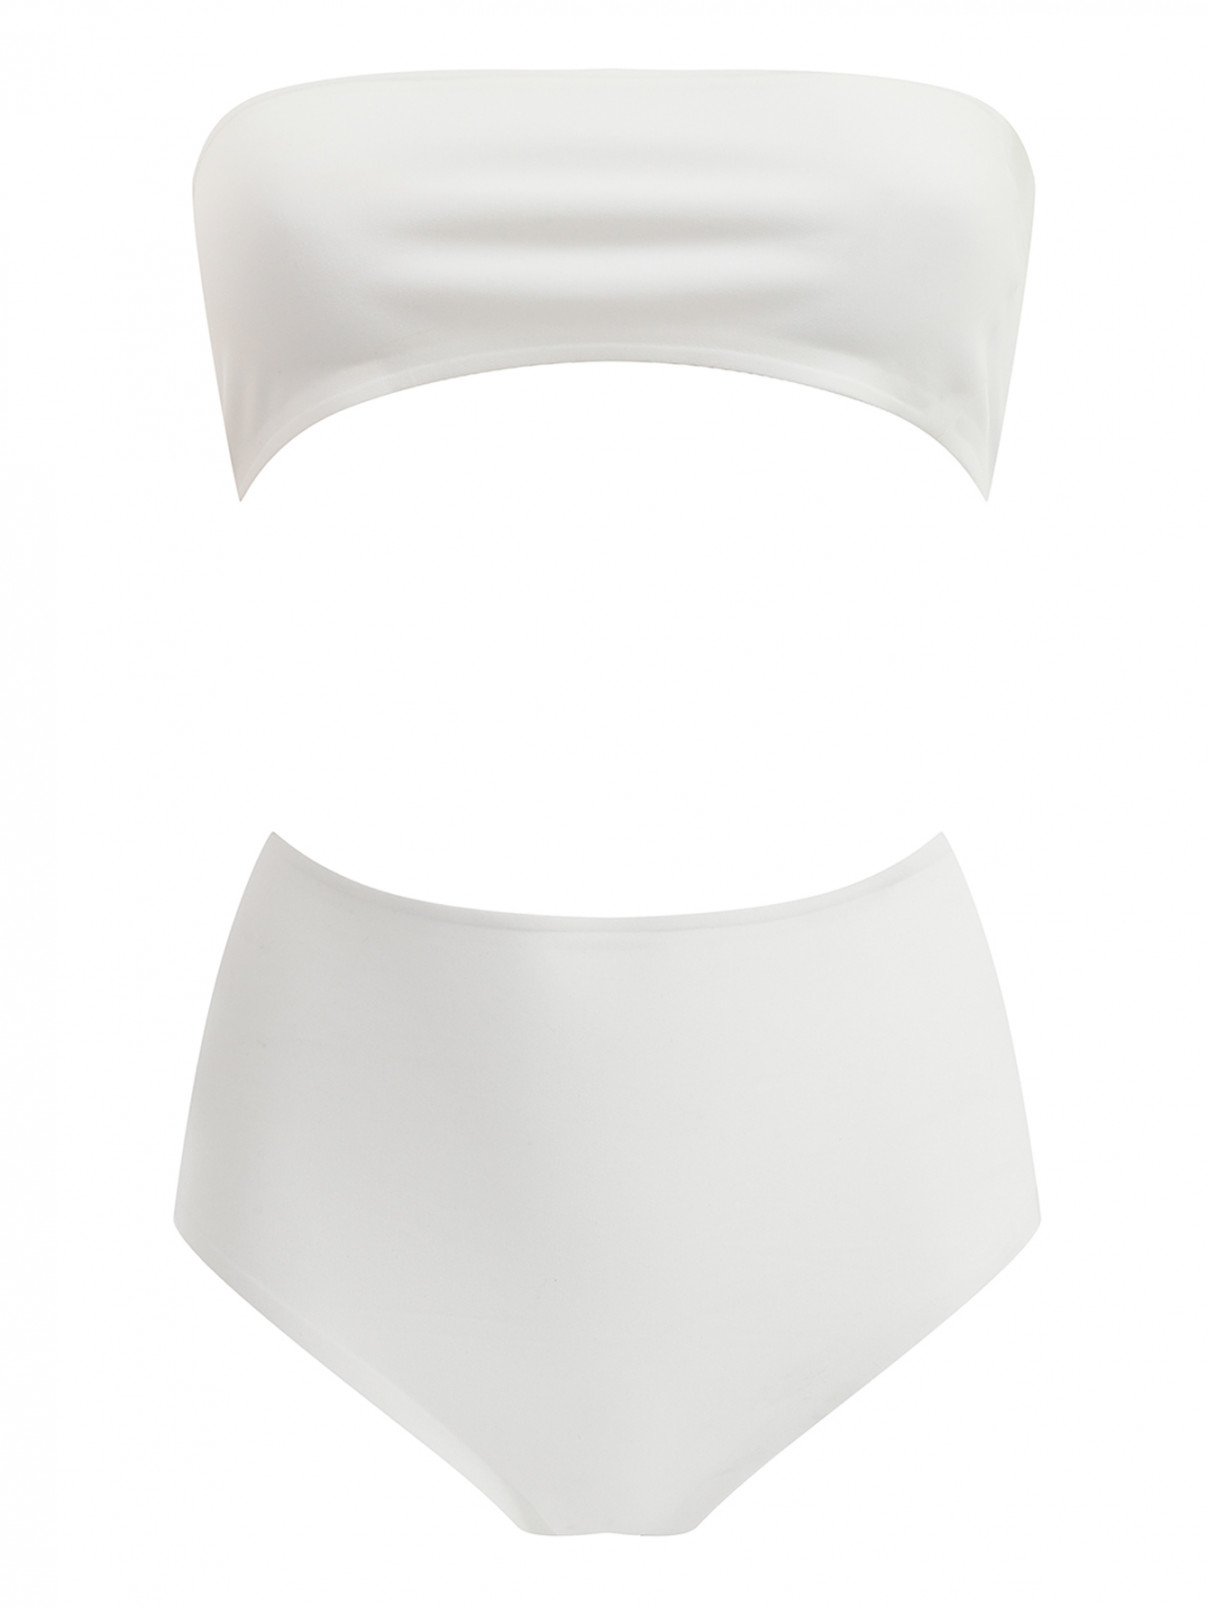 Однотонный купальник с завышенной талией Barbara Bui  –  Общий вид  – Цвет:  Белый